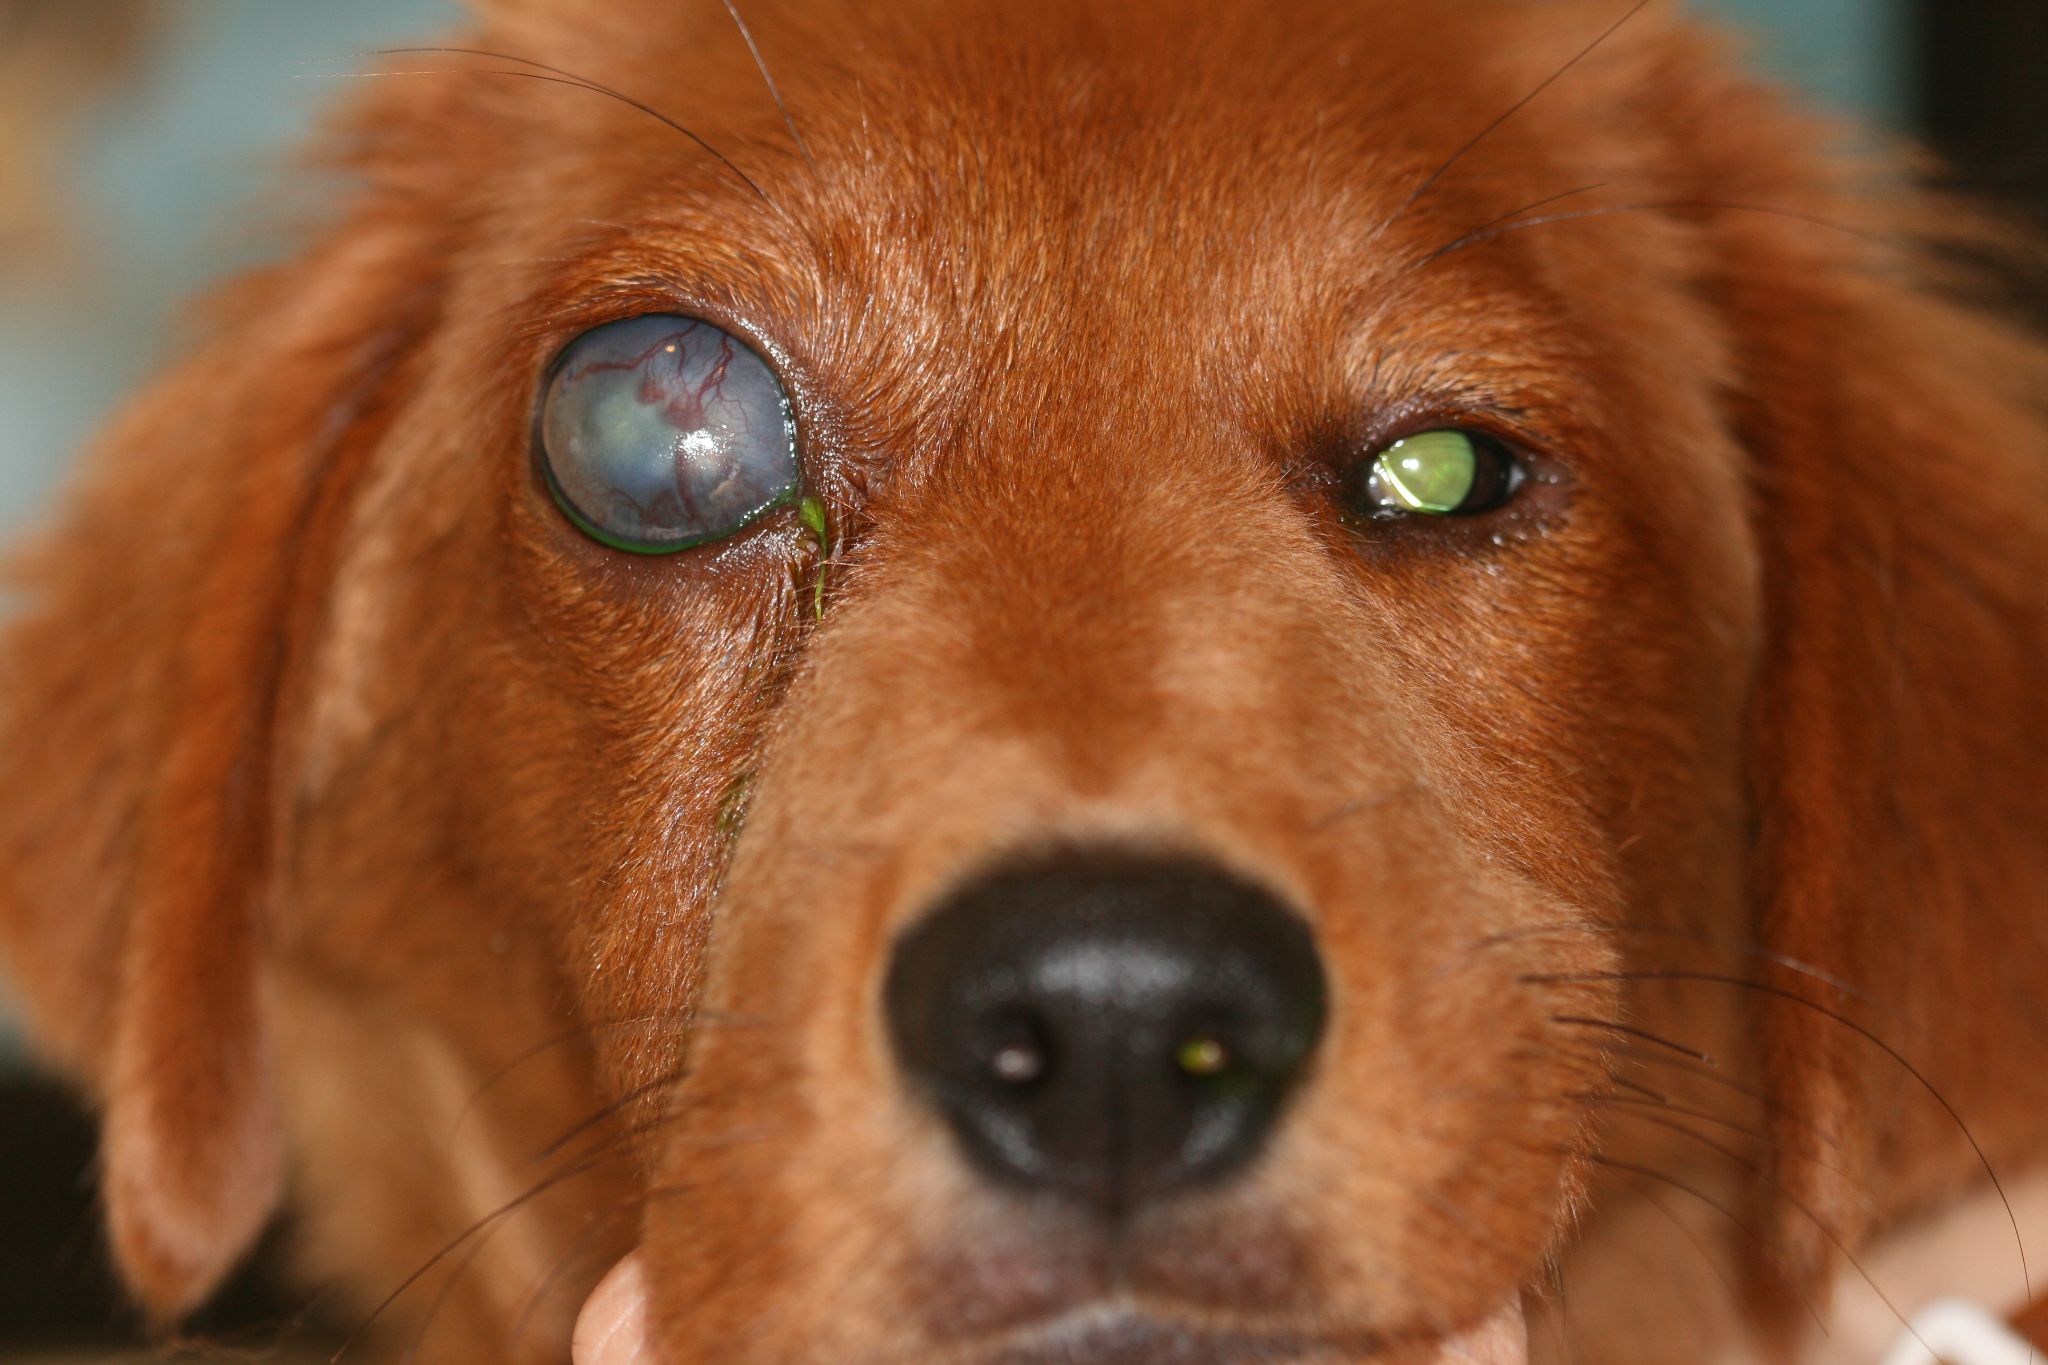 Enlarged eye in a dog